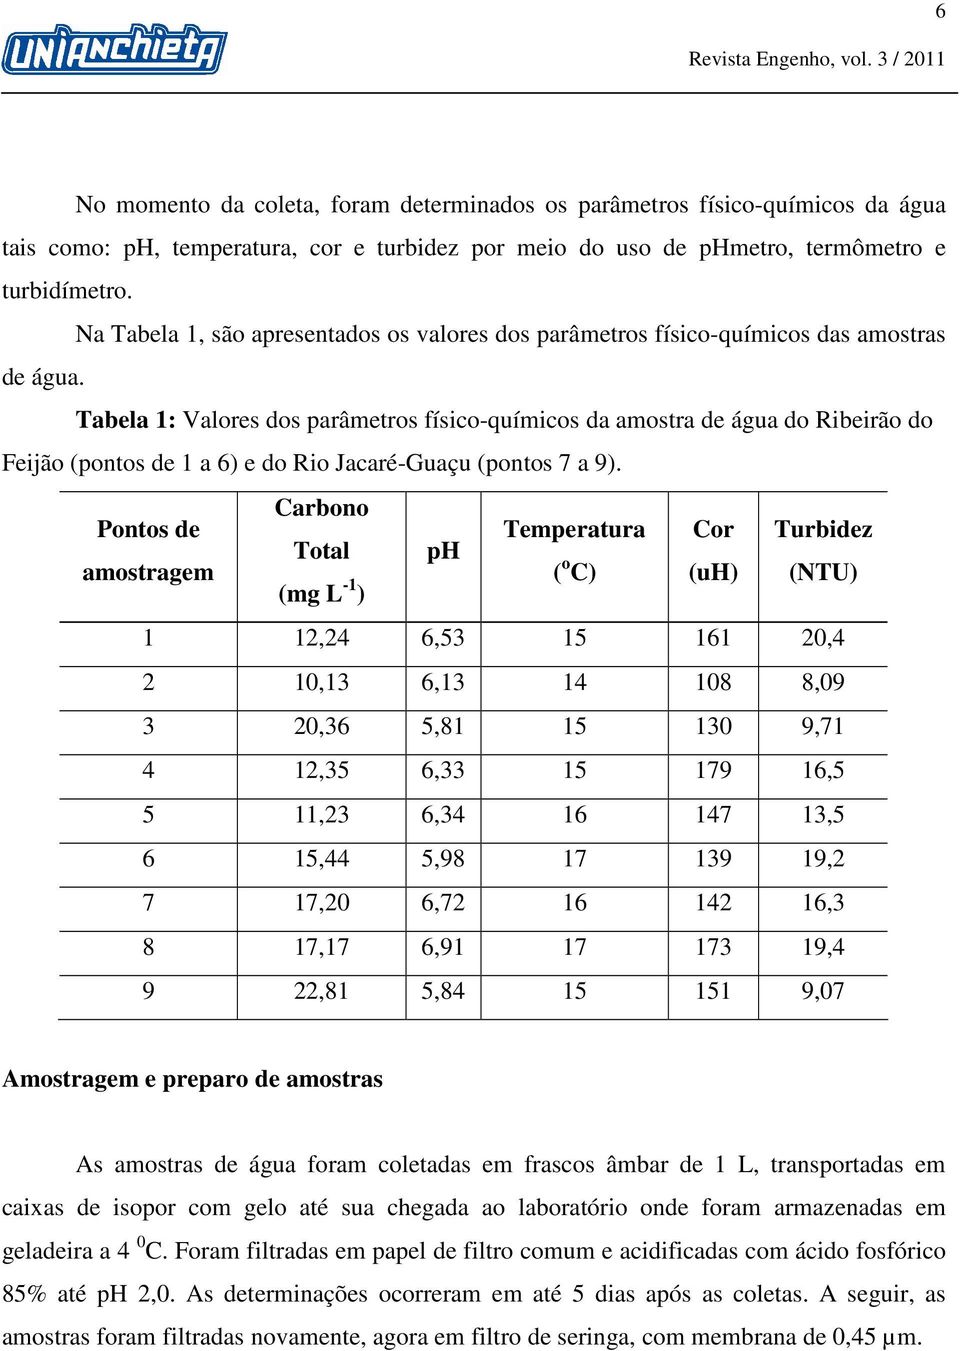 Tabela 1: Valores dos parâmetros físico-químicos da amostra de água do Ribeirão do Feijão (pontos de 1 a 6) e do Rio Jacaré-Guaçu (pontos 7 a 9).